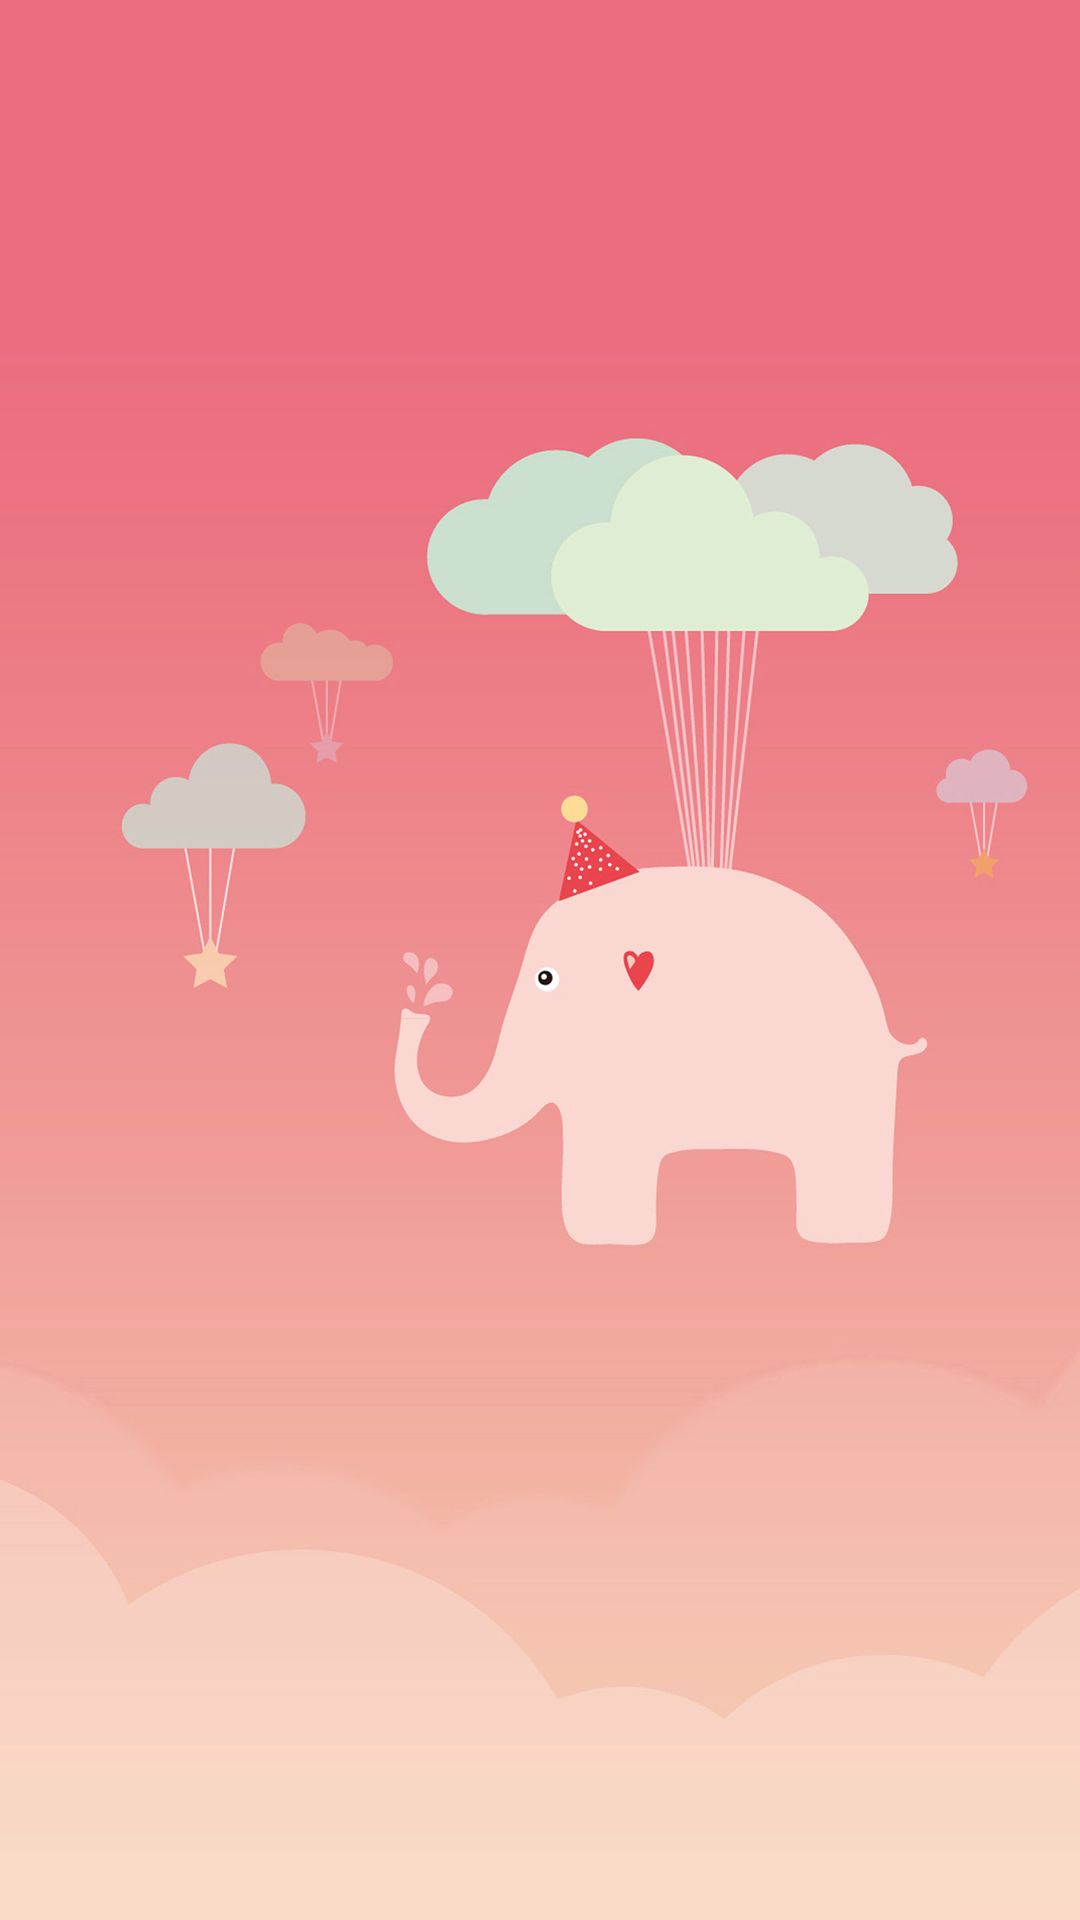 Cute Elephant iPhone Wallpaper iPad